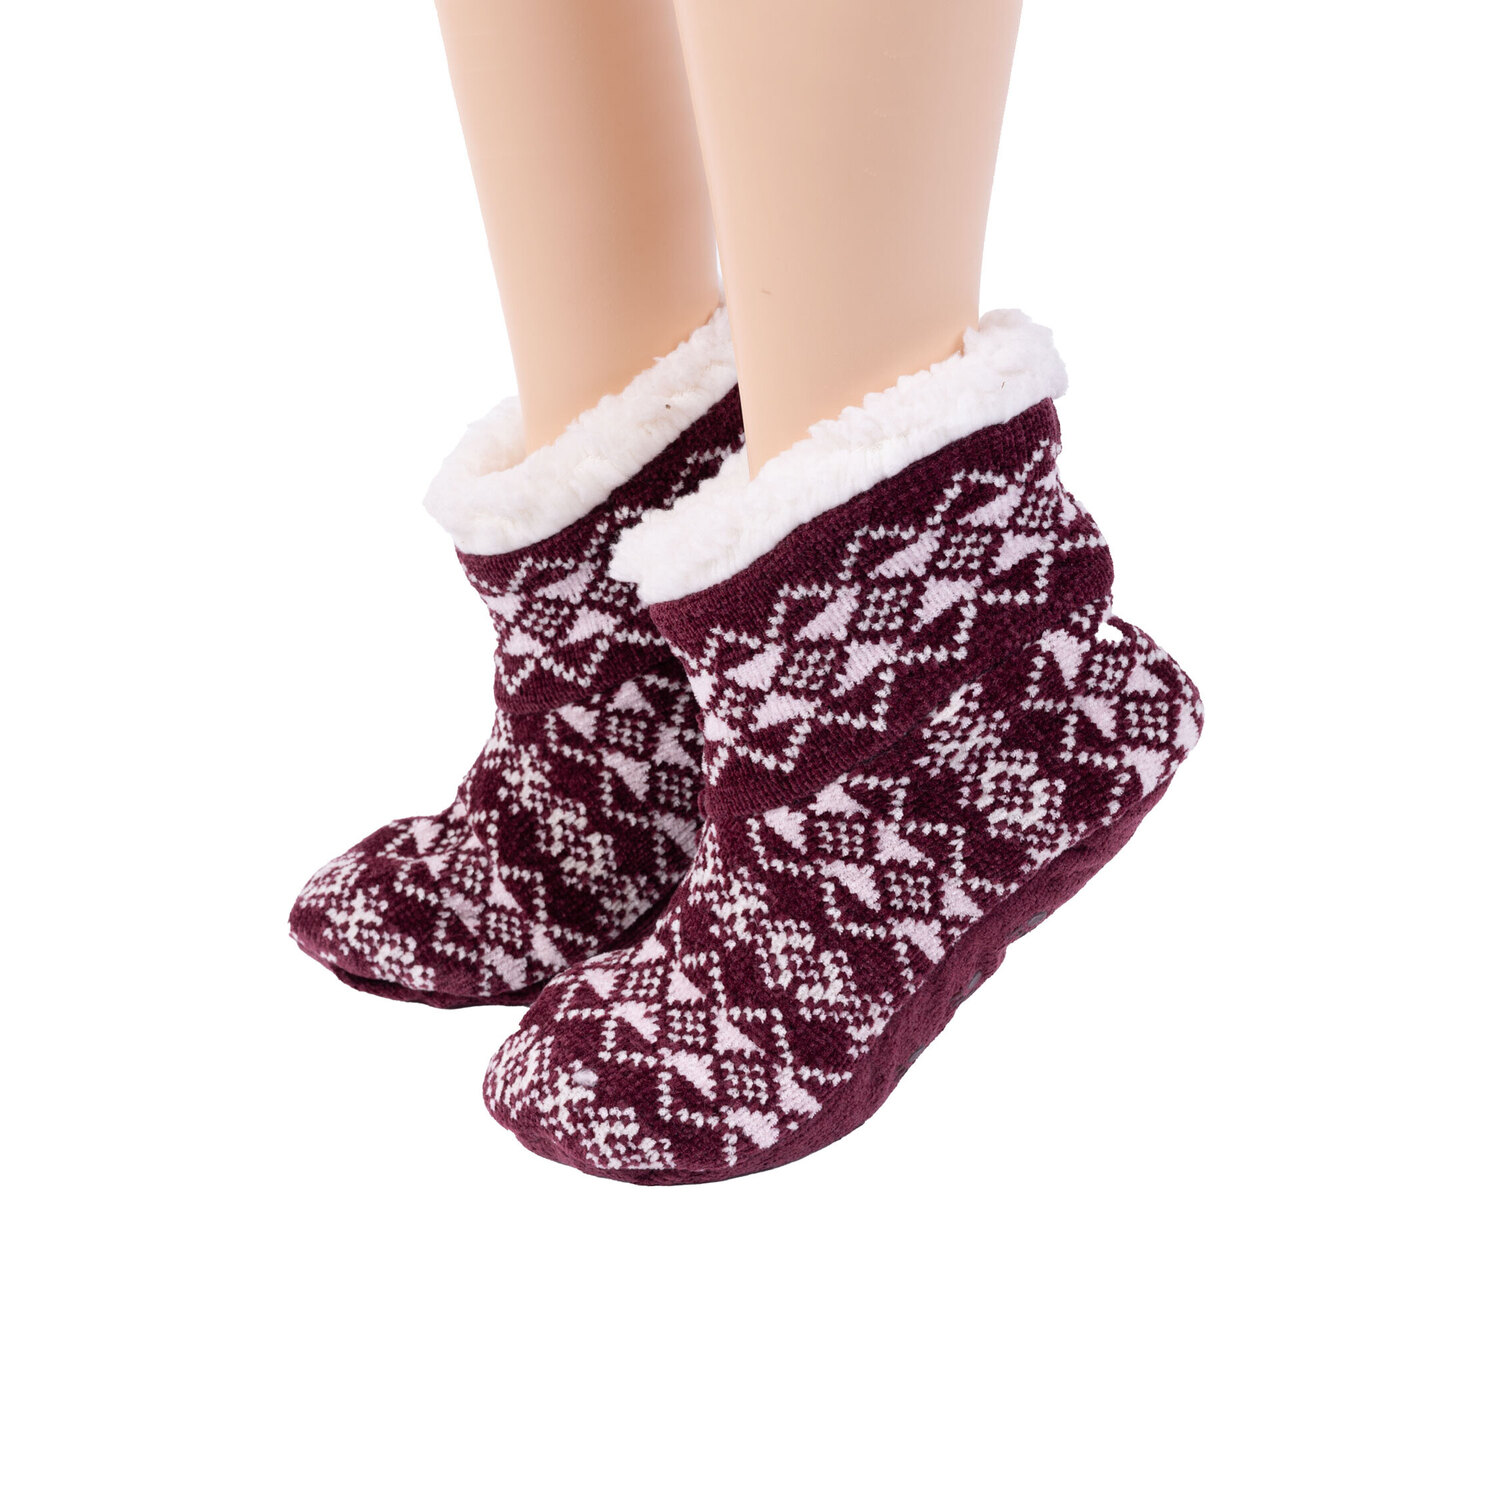 Bearpaw - Pawz - Sherpa-lined bootie slipper socks - Fair isle